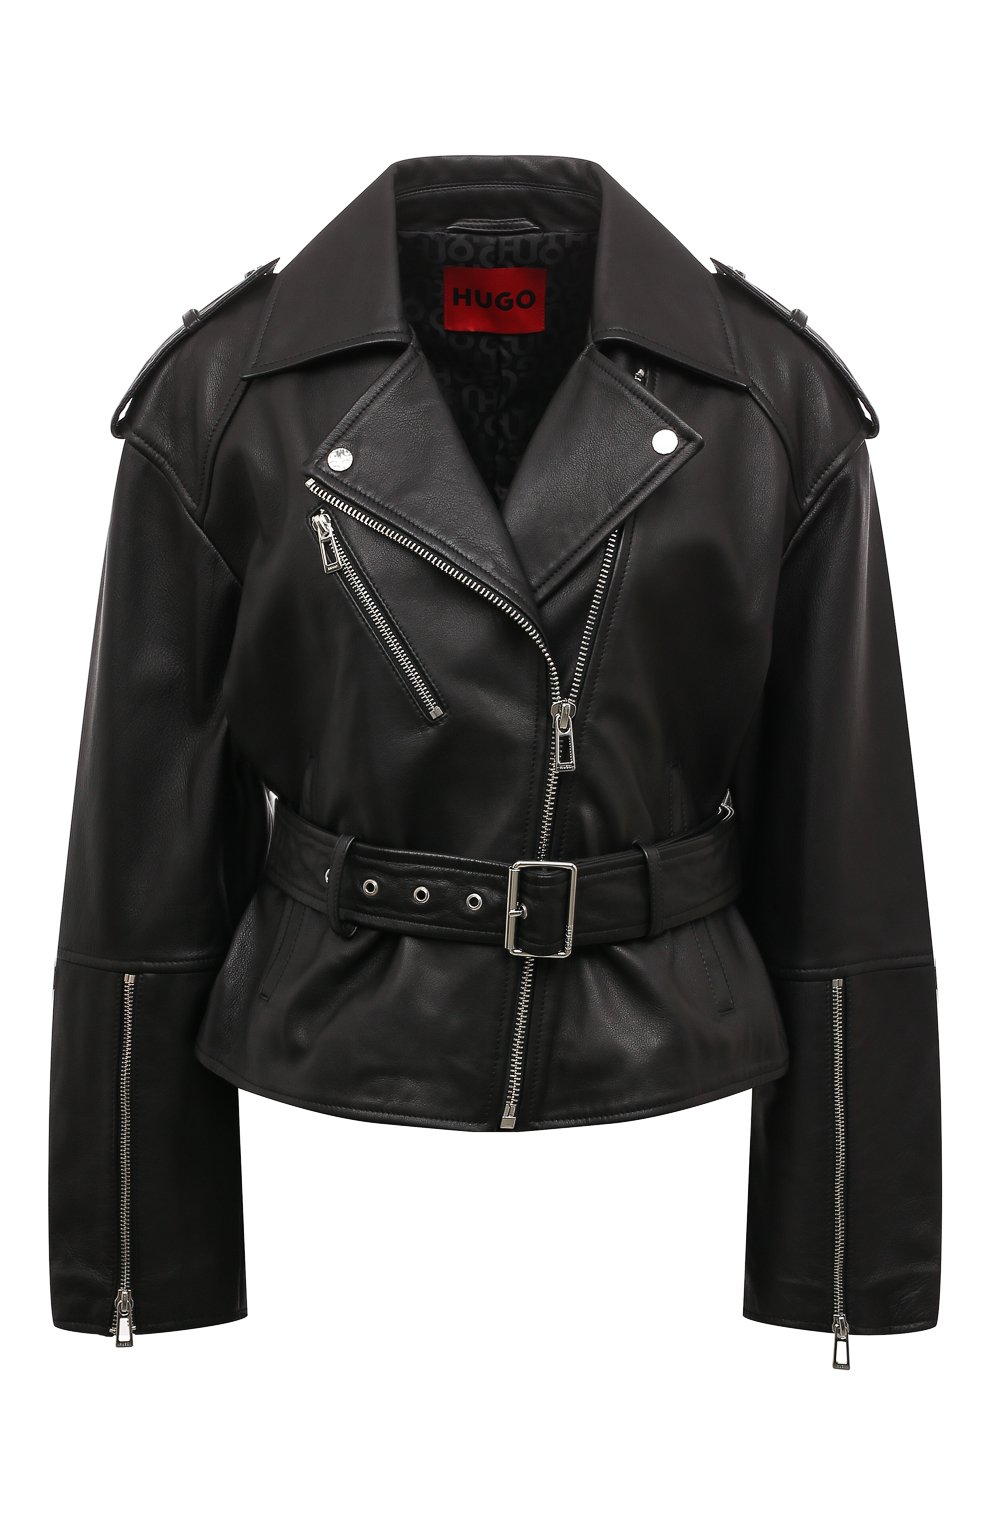 Куртки HUGO, Кожаная куртка HUGO, Индия, Чёрный, Кожа натуральная: 100%;, 13380342  - купить